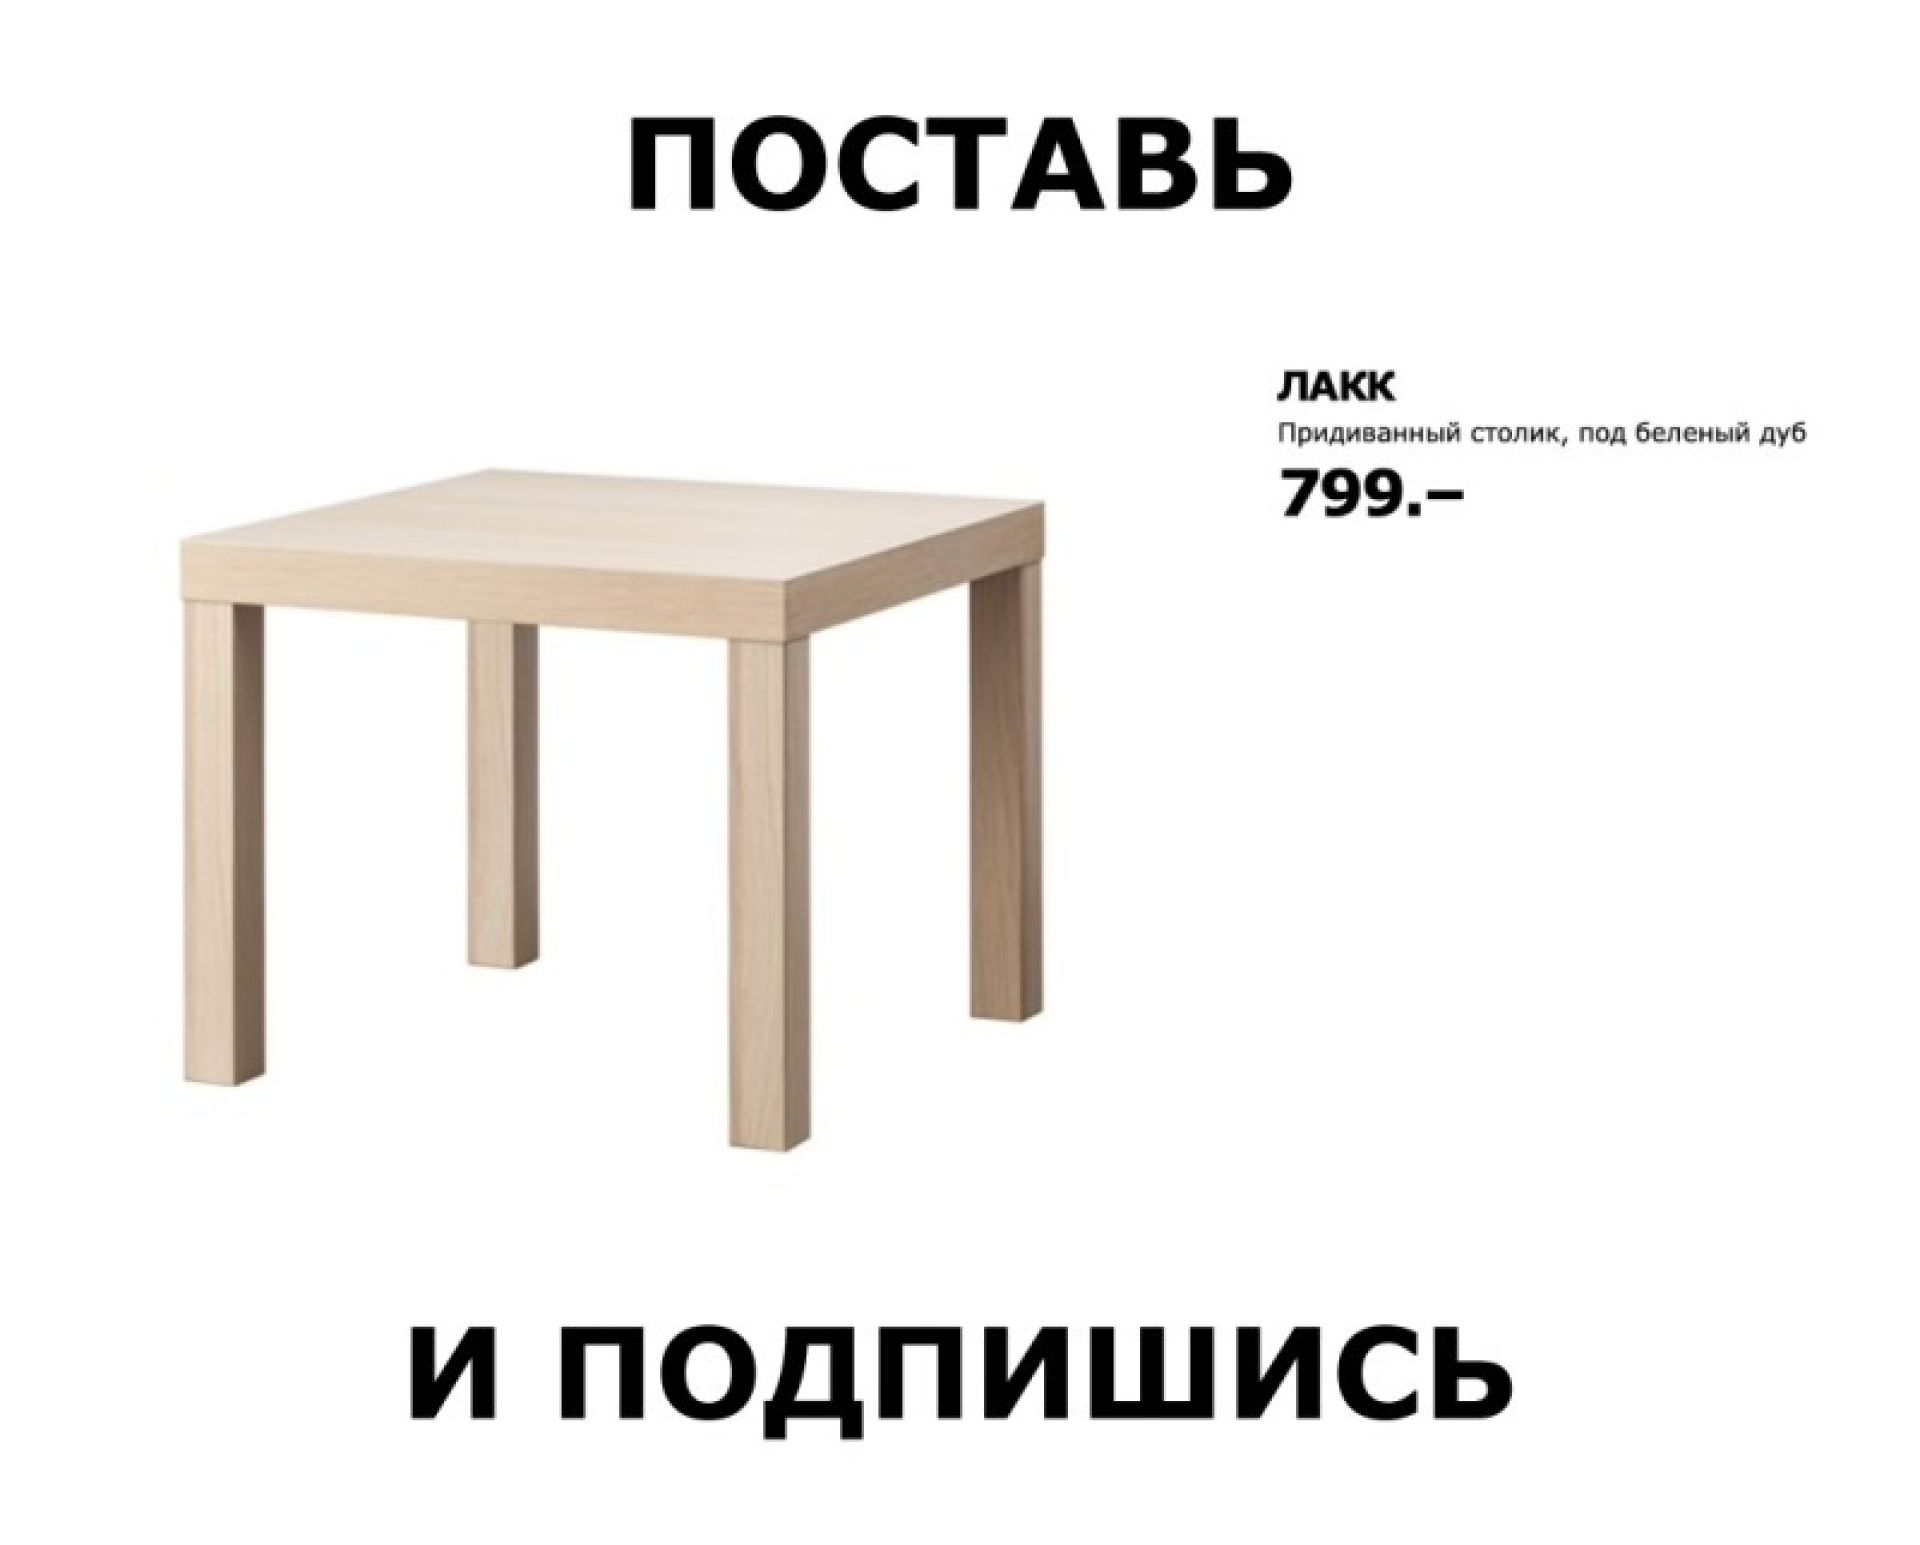 Ответ на вопрос про два стула. Мемы про названия икеа. Названия икеа. Ikea смешные названия. Икеевские названия мебели.